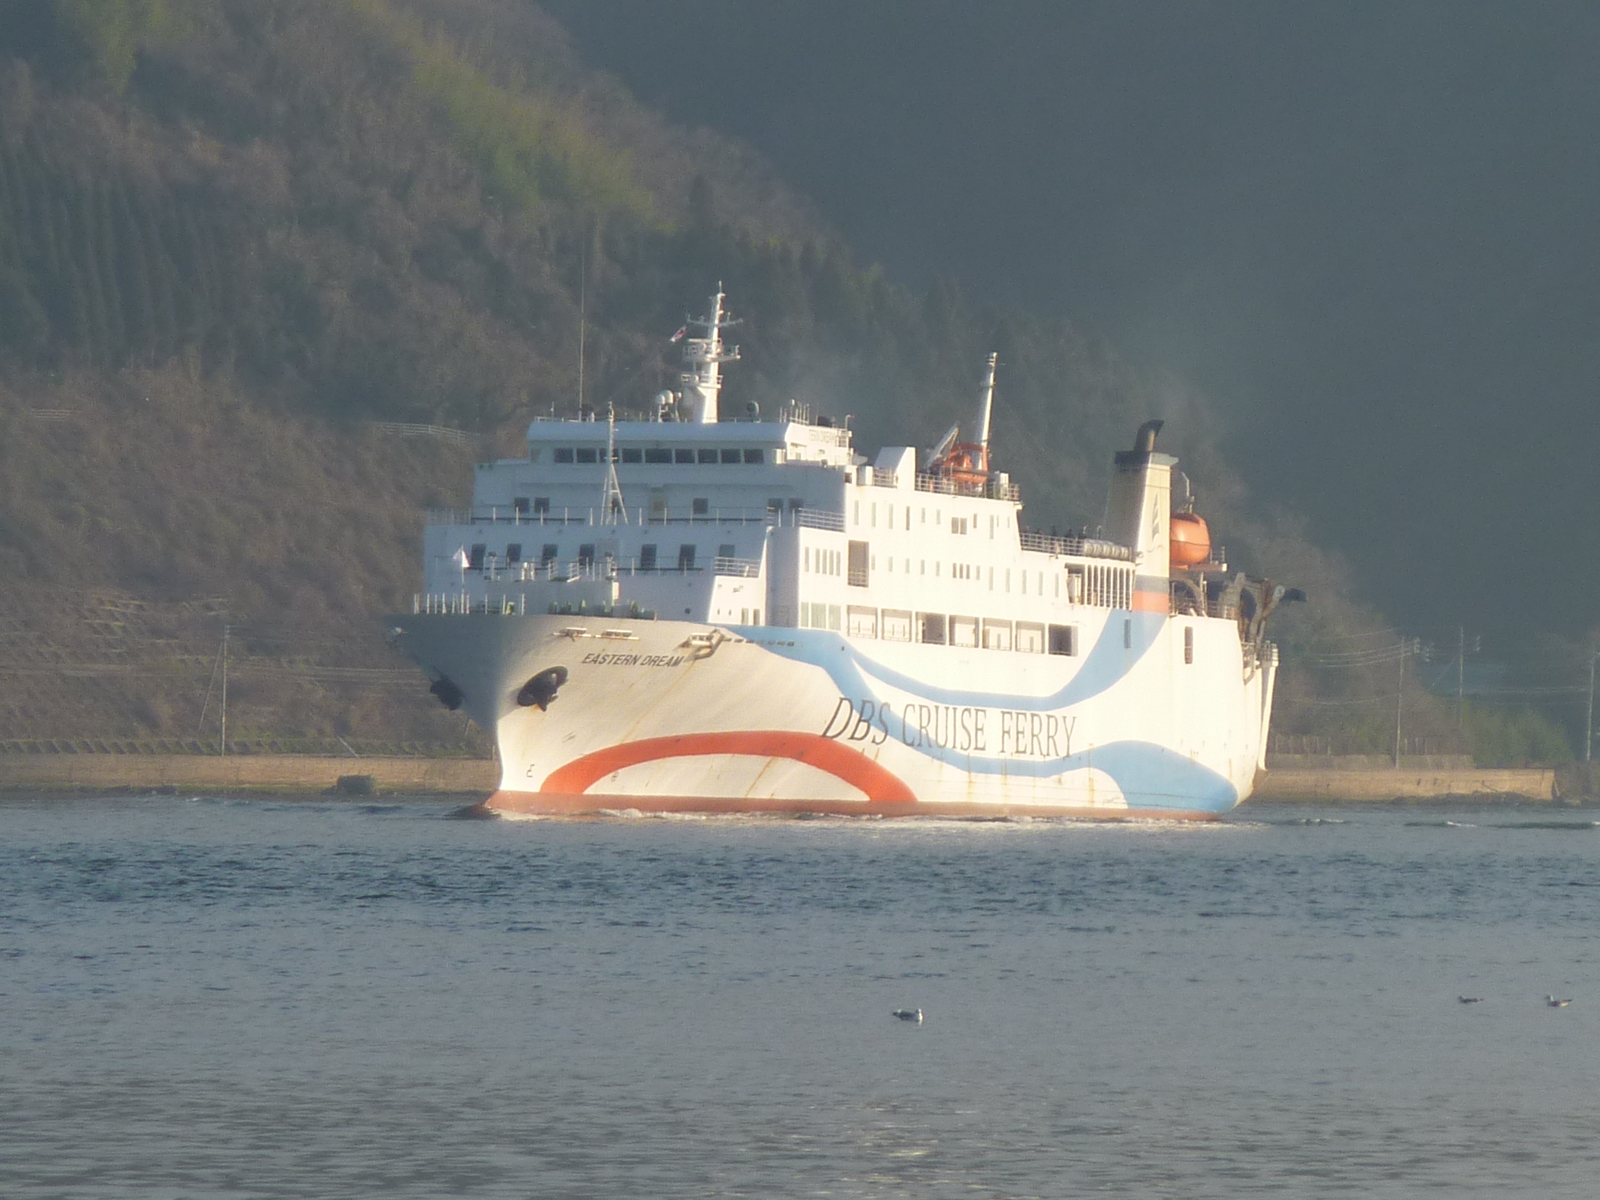 日韓定期貨客船「DBSクルーズフェリー」